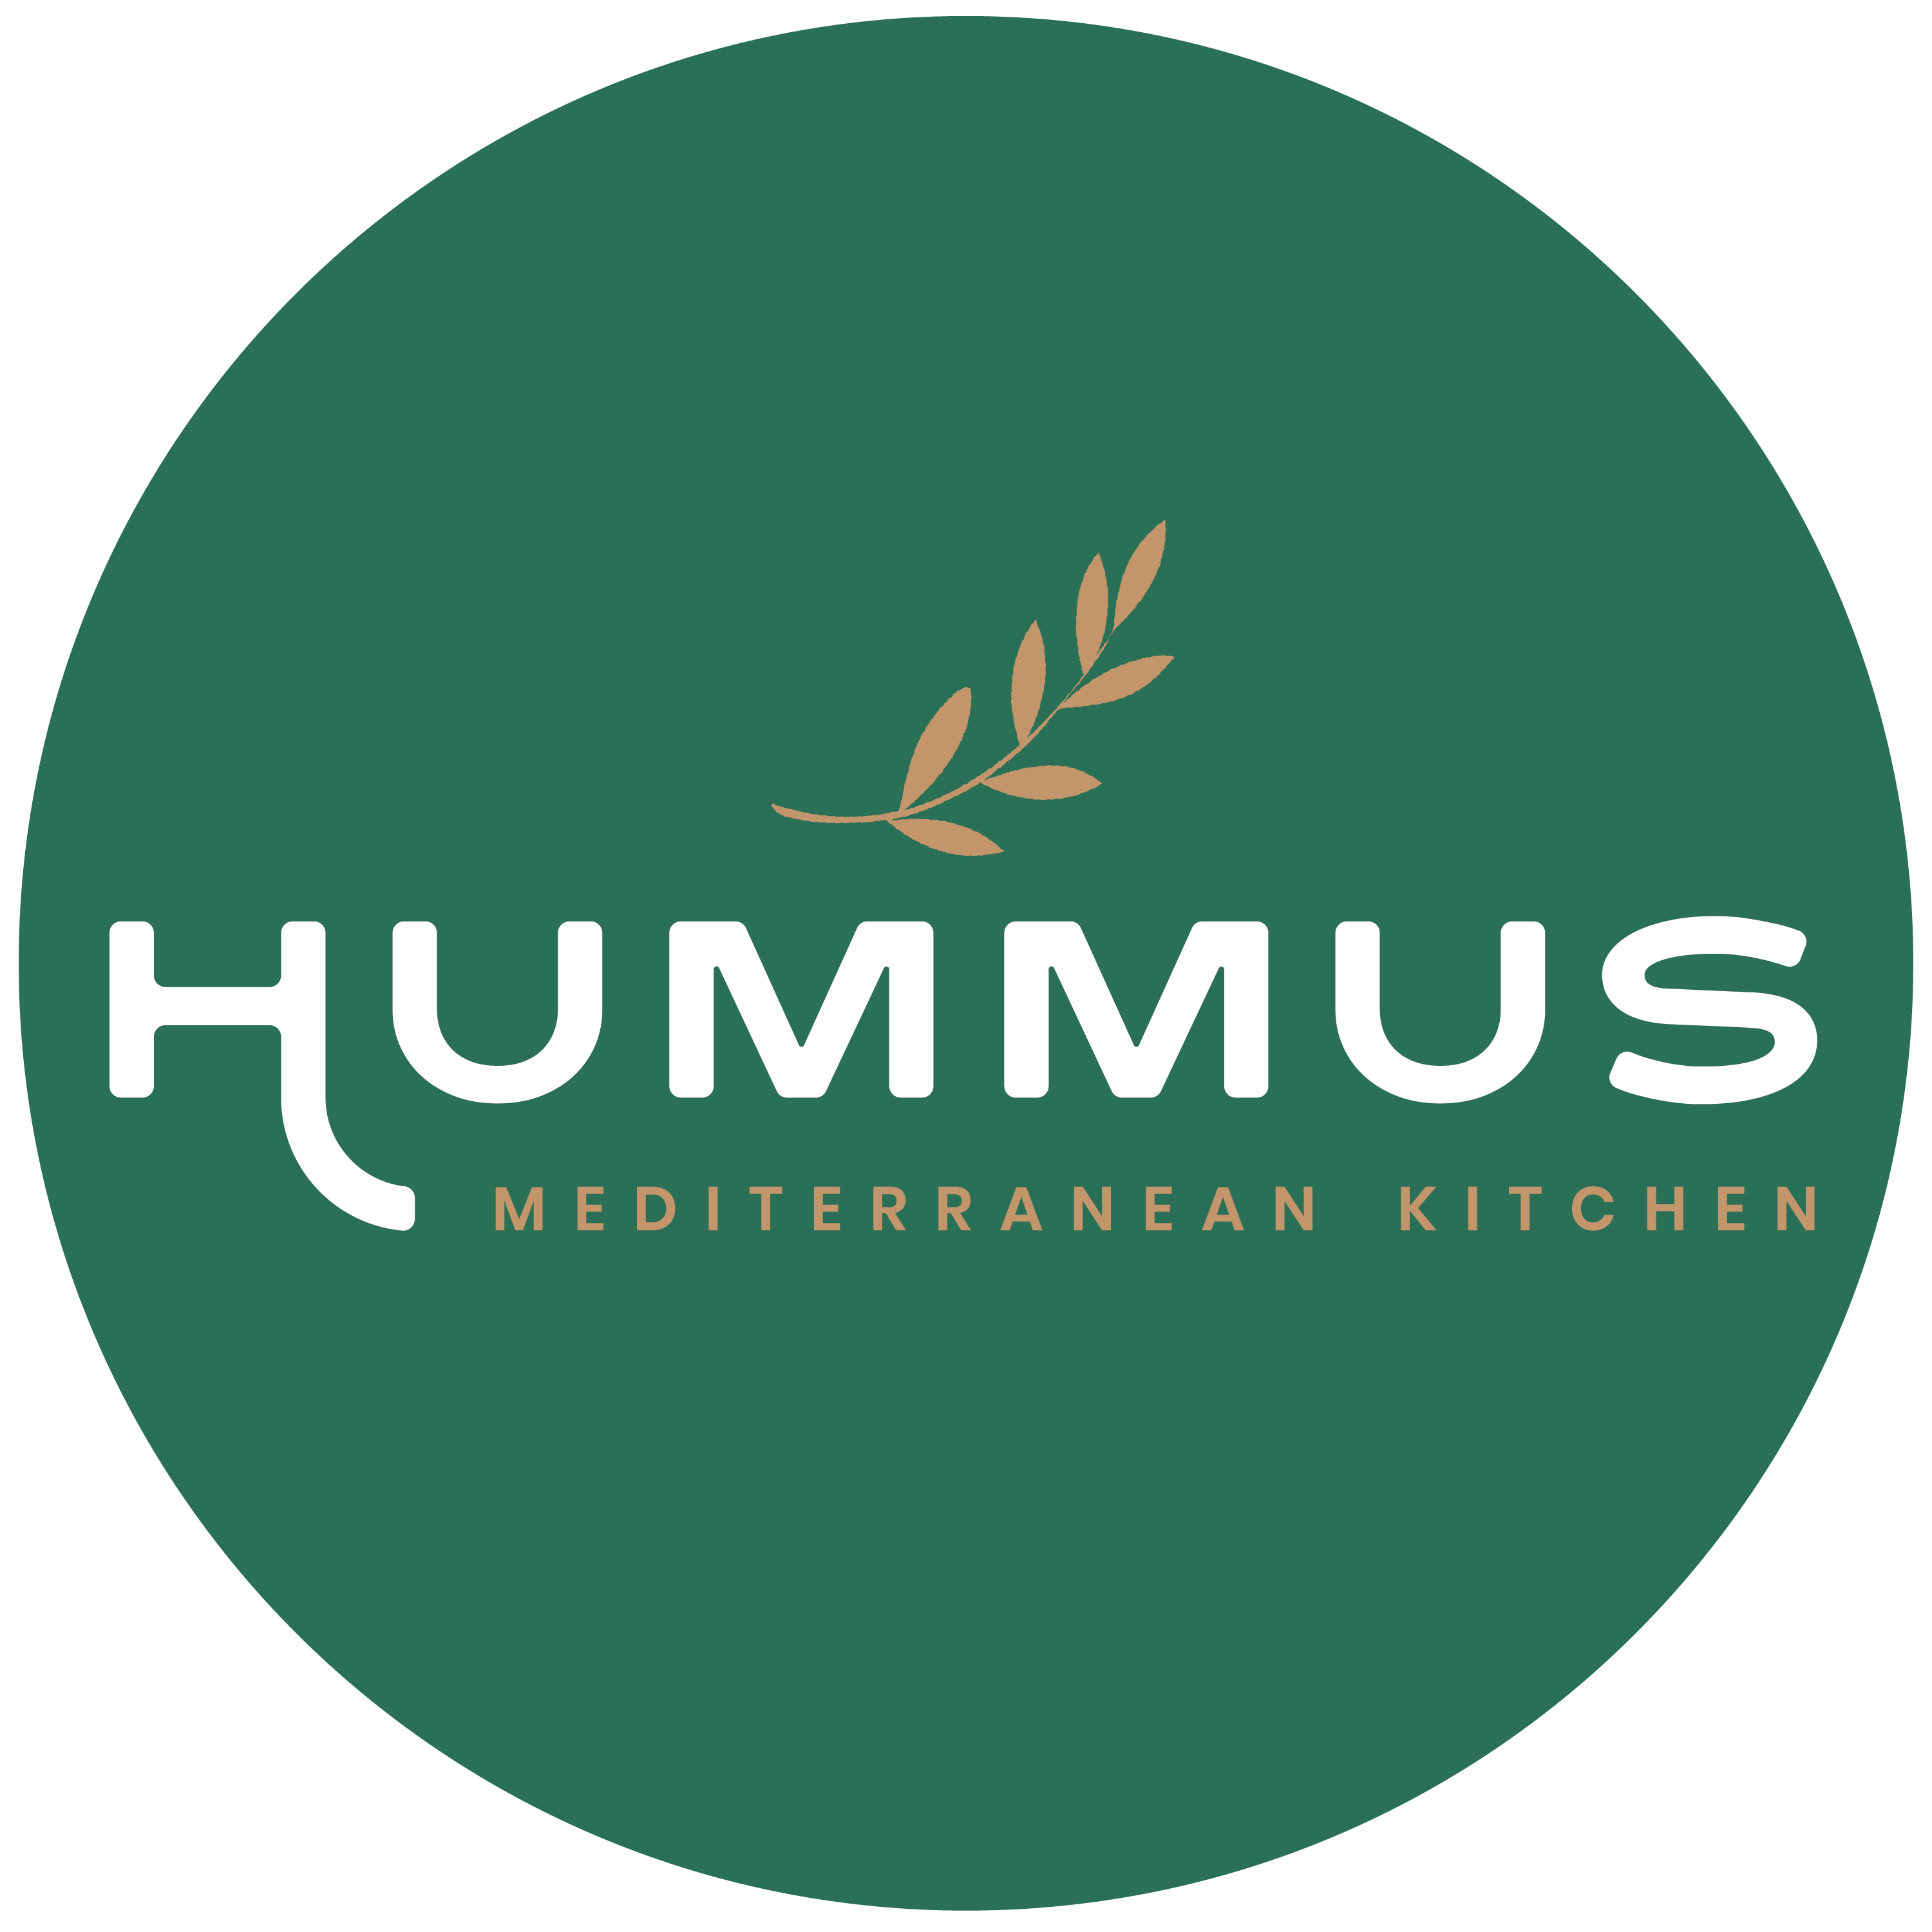 Hummus Mediterranean Kitchen – Mountain View thumbnail image